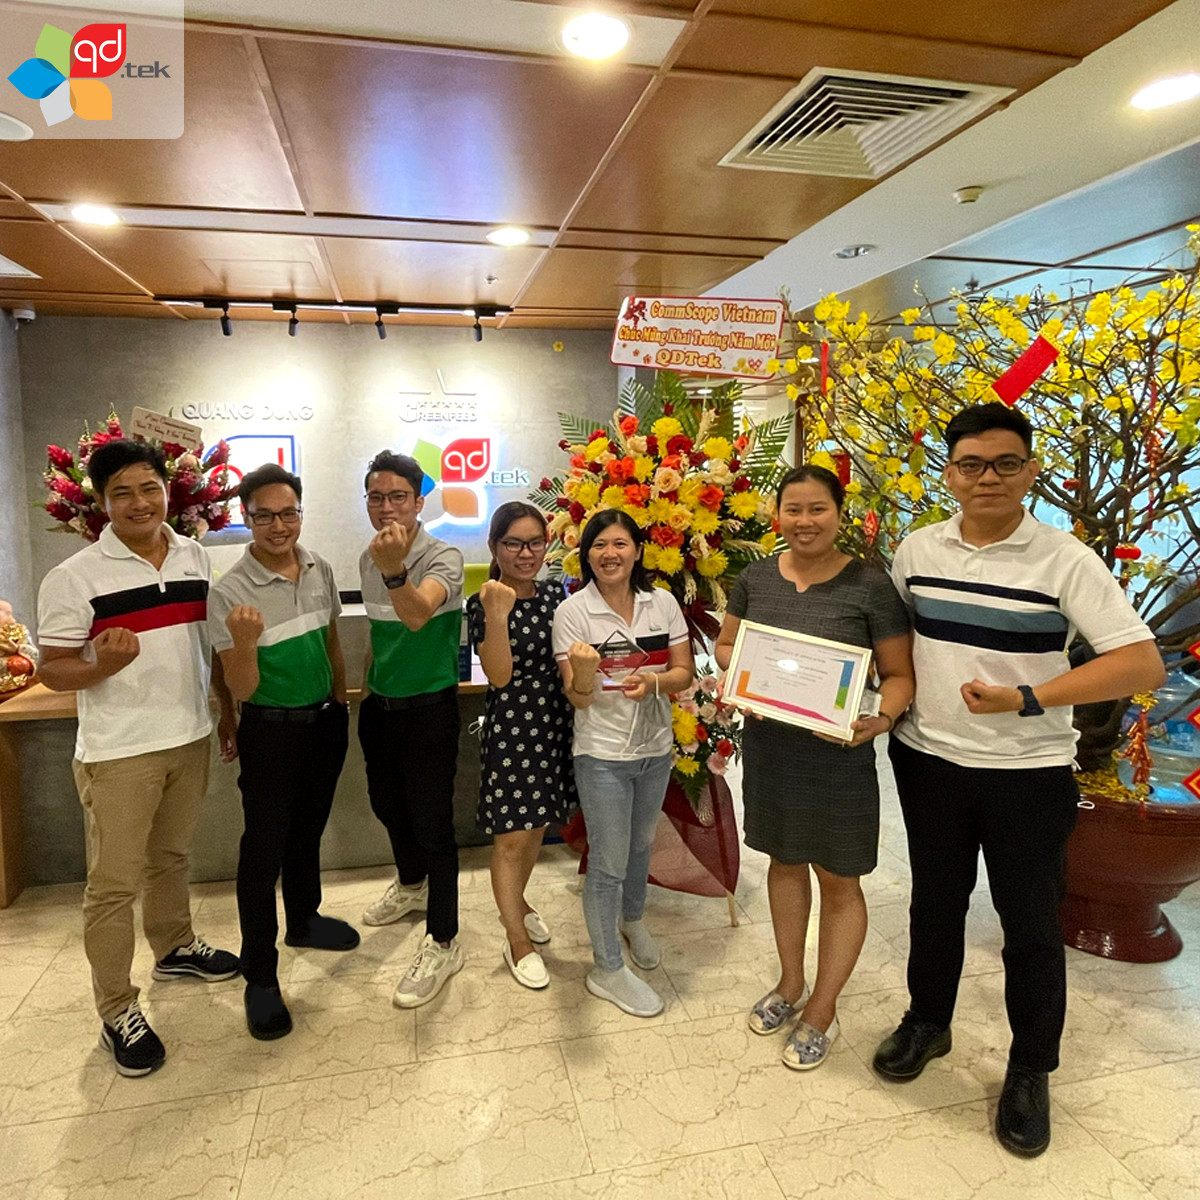 QD.TEK tự hào là nhà phân phối Commscope có doanh thu cao nhất Việt Nam liên tiếp 5 năm liền và đạt hoanh thi hiệu quả nhất khu vực Đông Nam Á năm 2021